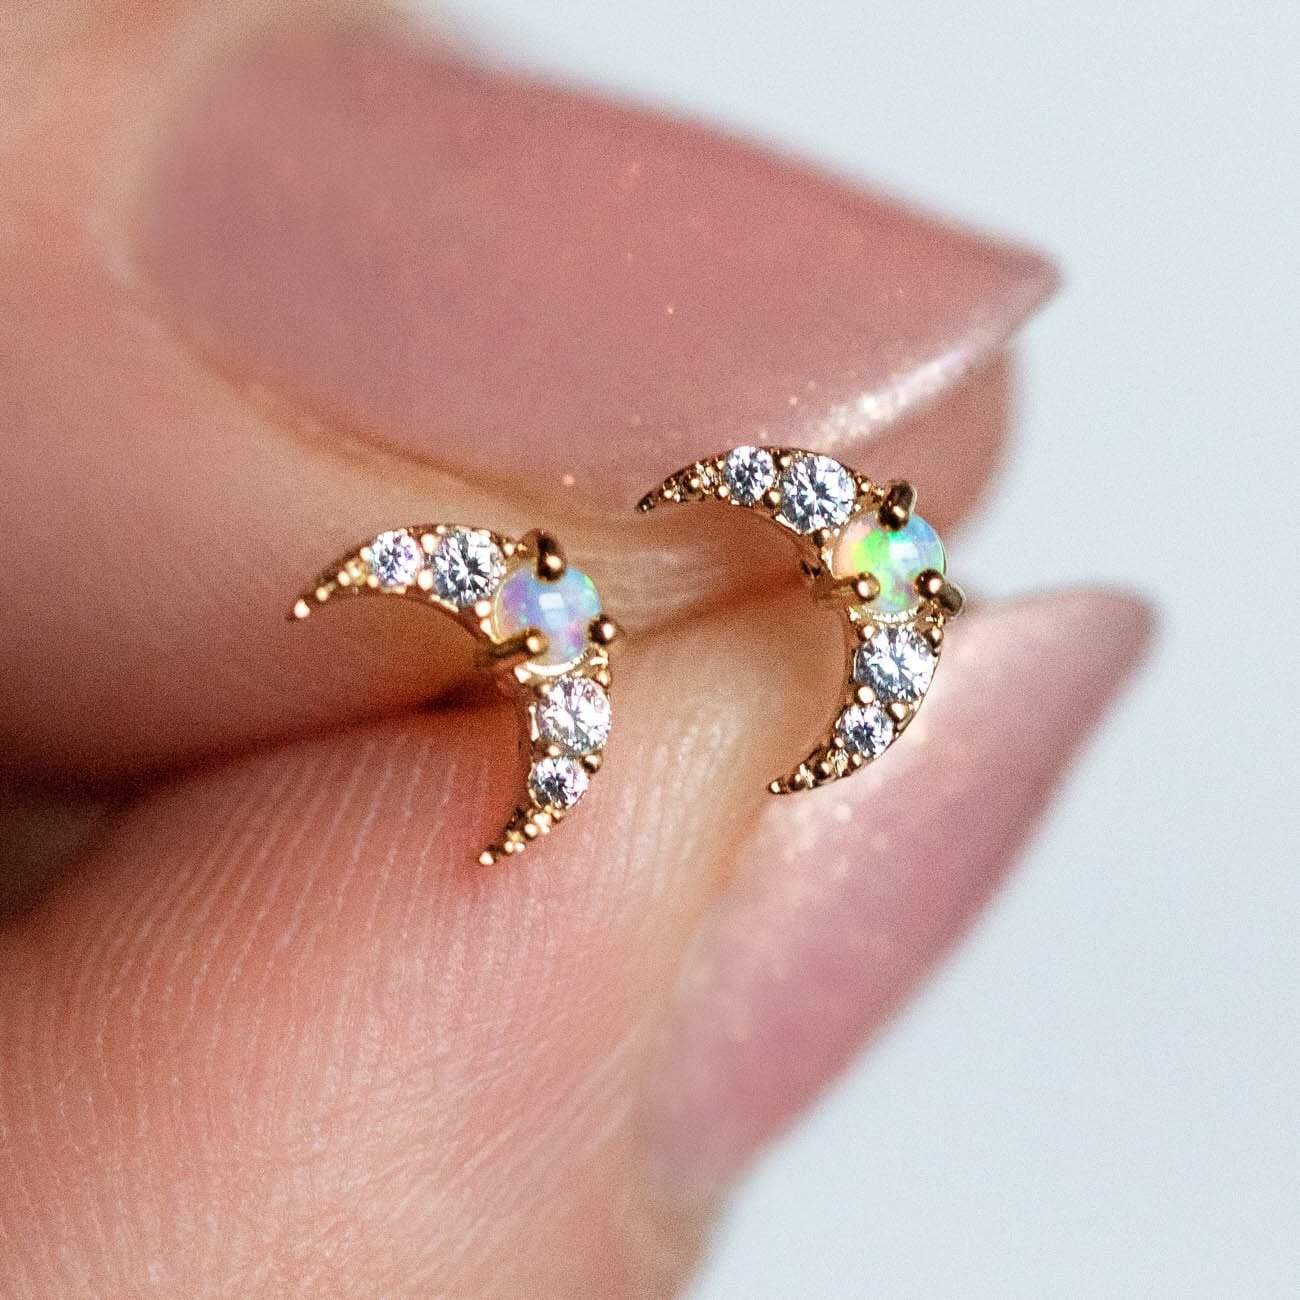 Mini Moon Opal Stud Earrings earrings Tai Jewelry 